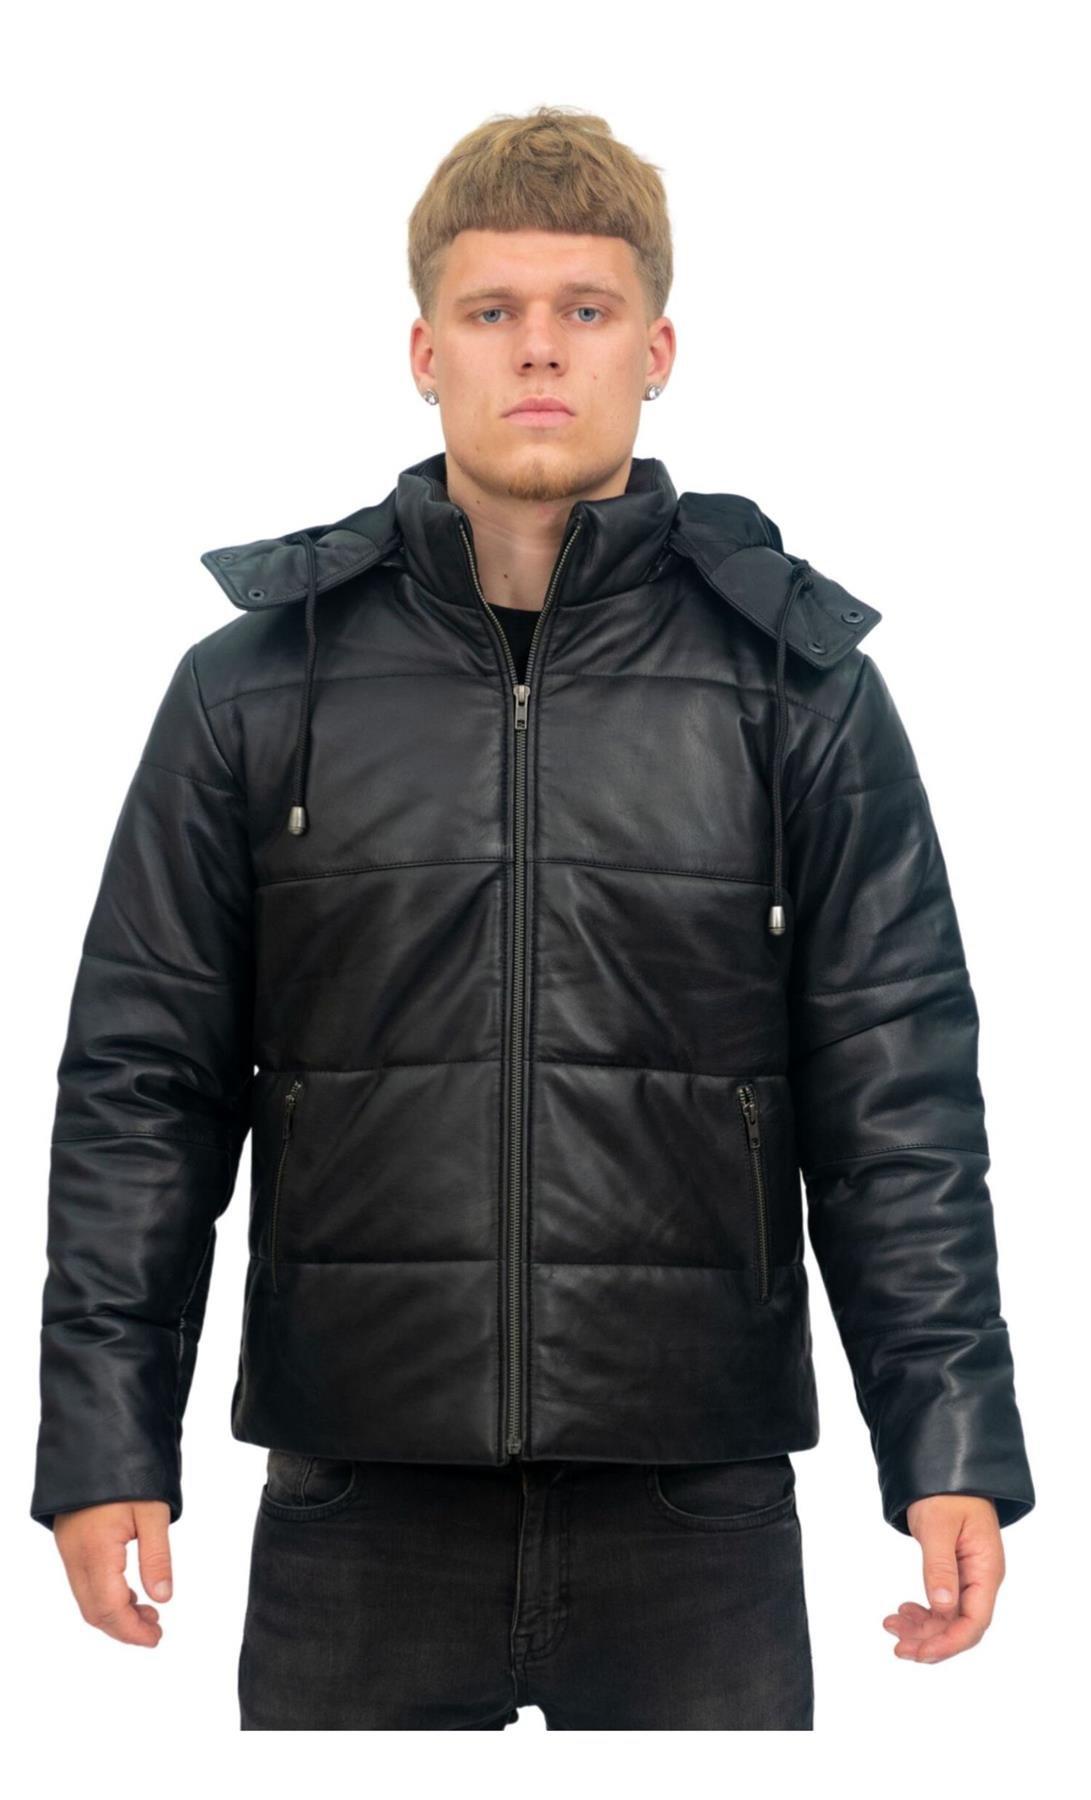 Кожаный бомбер-пуховик-Аугсбург Infinity Leather, черный куртка стеганая утепленная с капюшоном 9 лет 132 см розовый